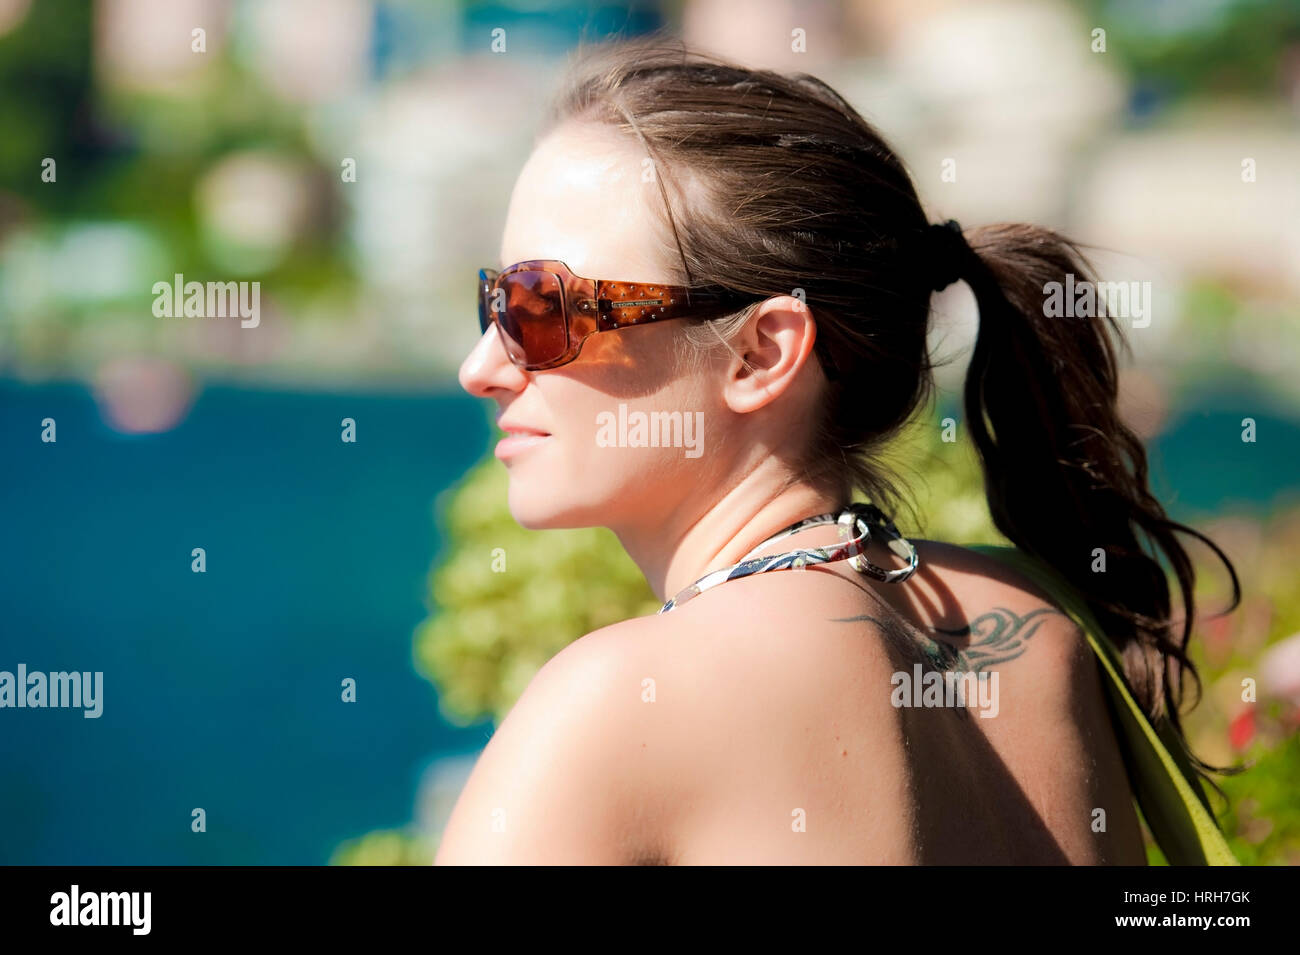 Parution du modèle, Junge Frau mit Sonnenbrille - femme avec des nuances Banque D'Images